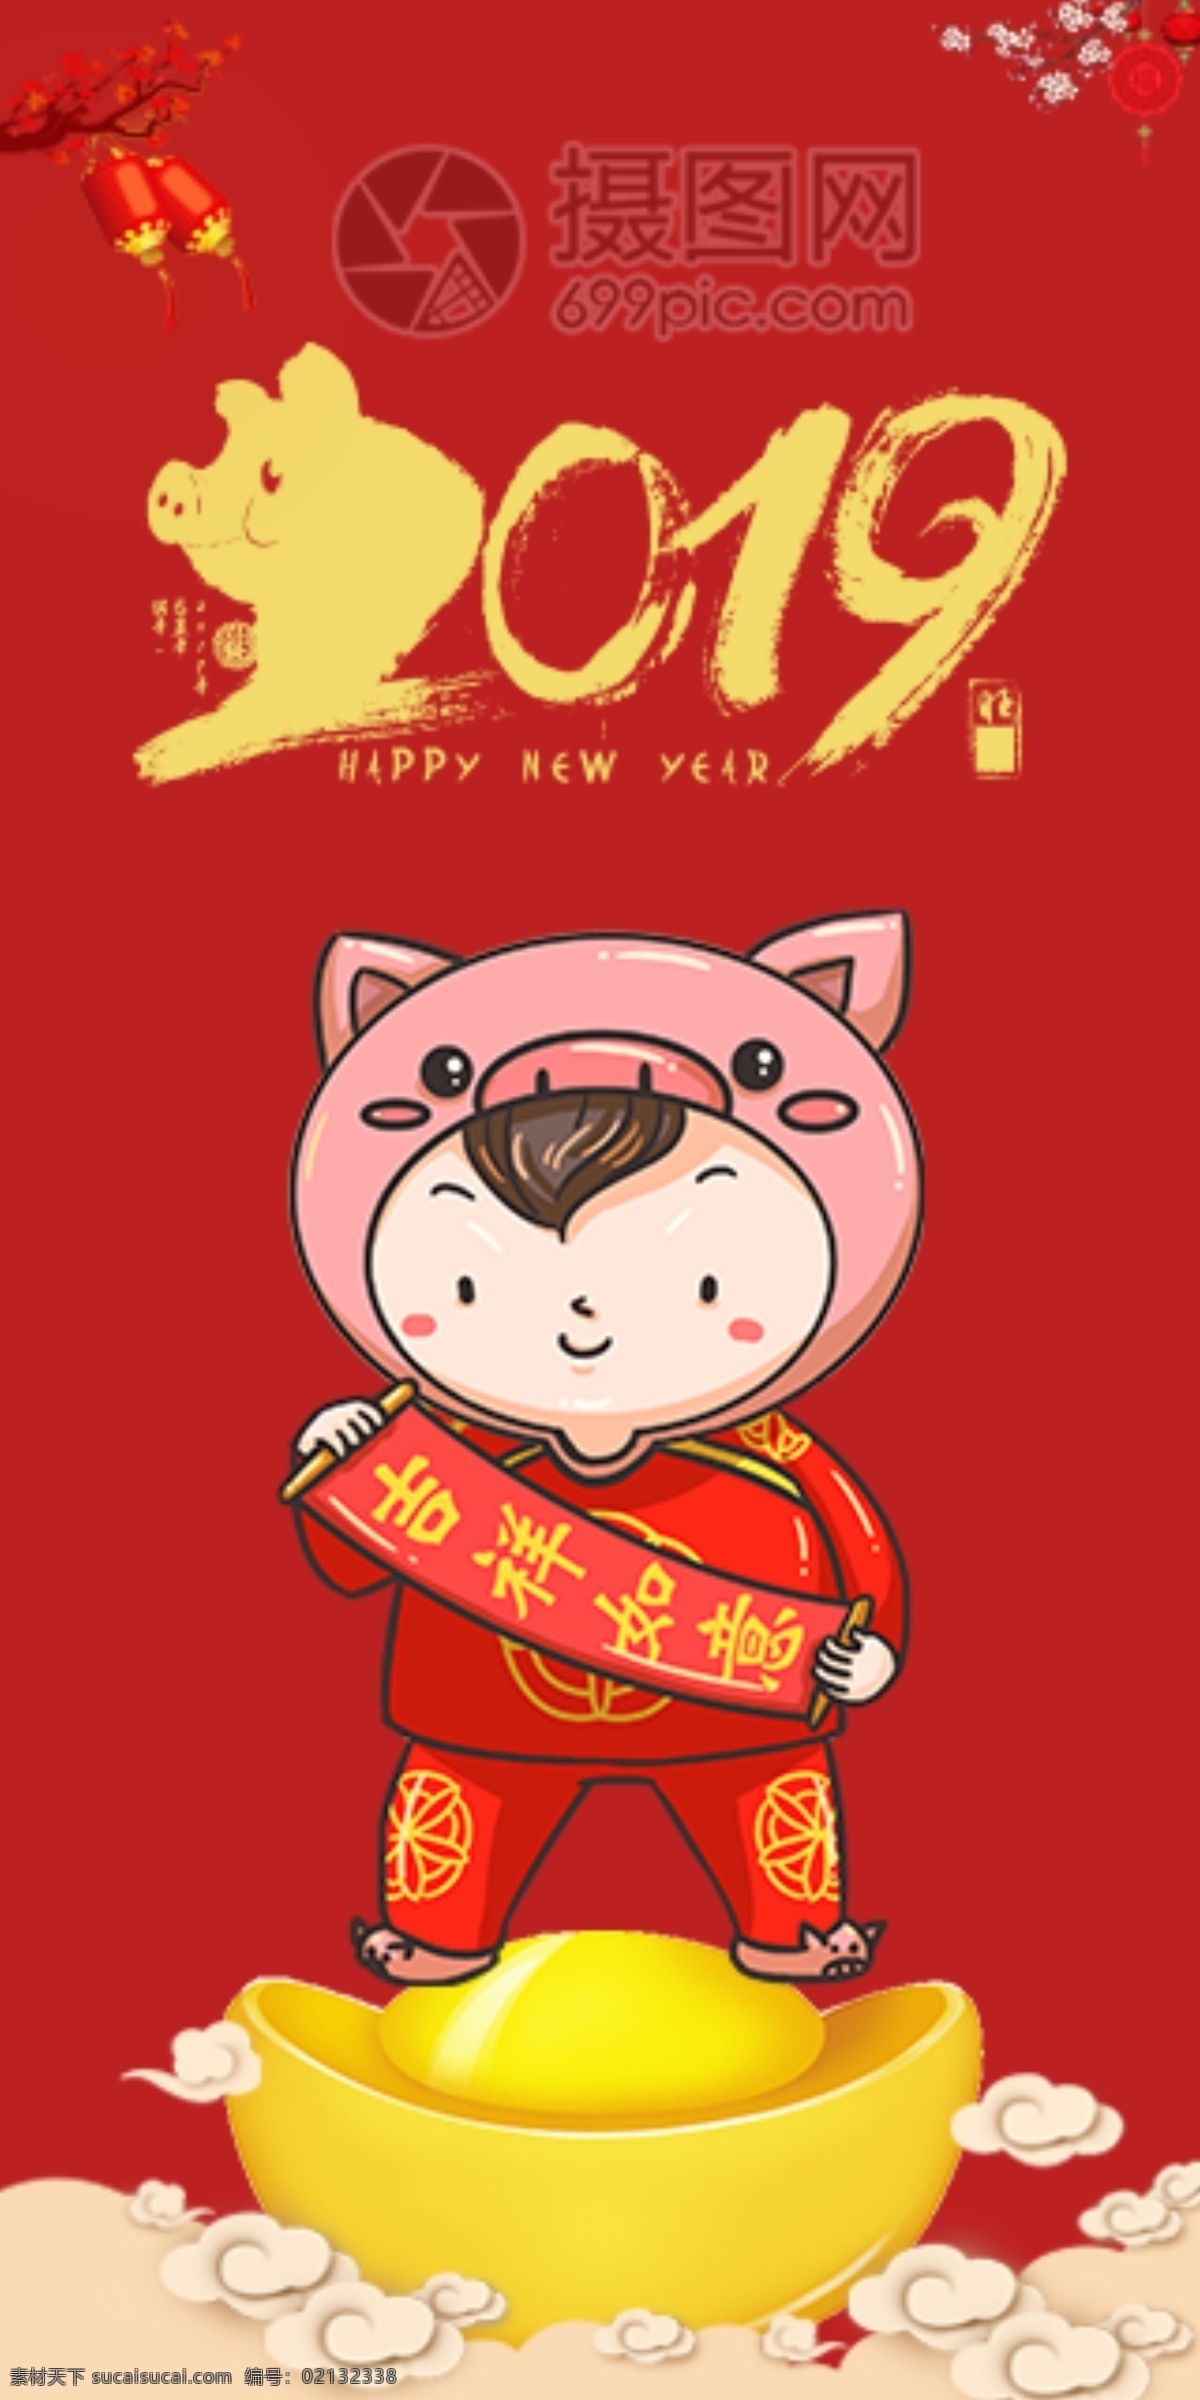 2019 猪年 新春 红包 吉祥如意 猪年红包 新春红包 红包素材 红包设计 新年红 新年红包